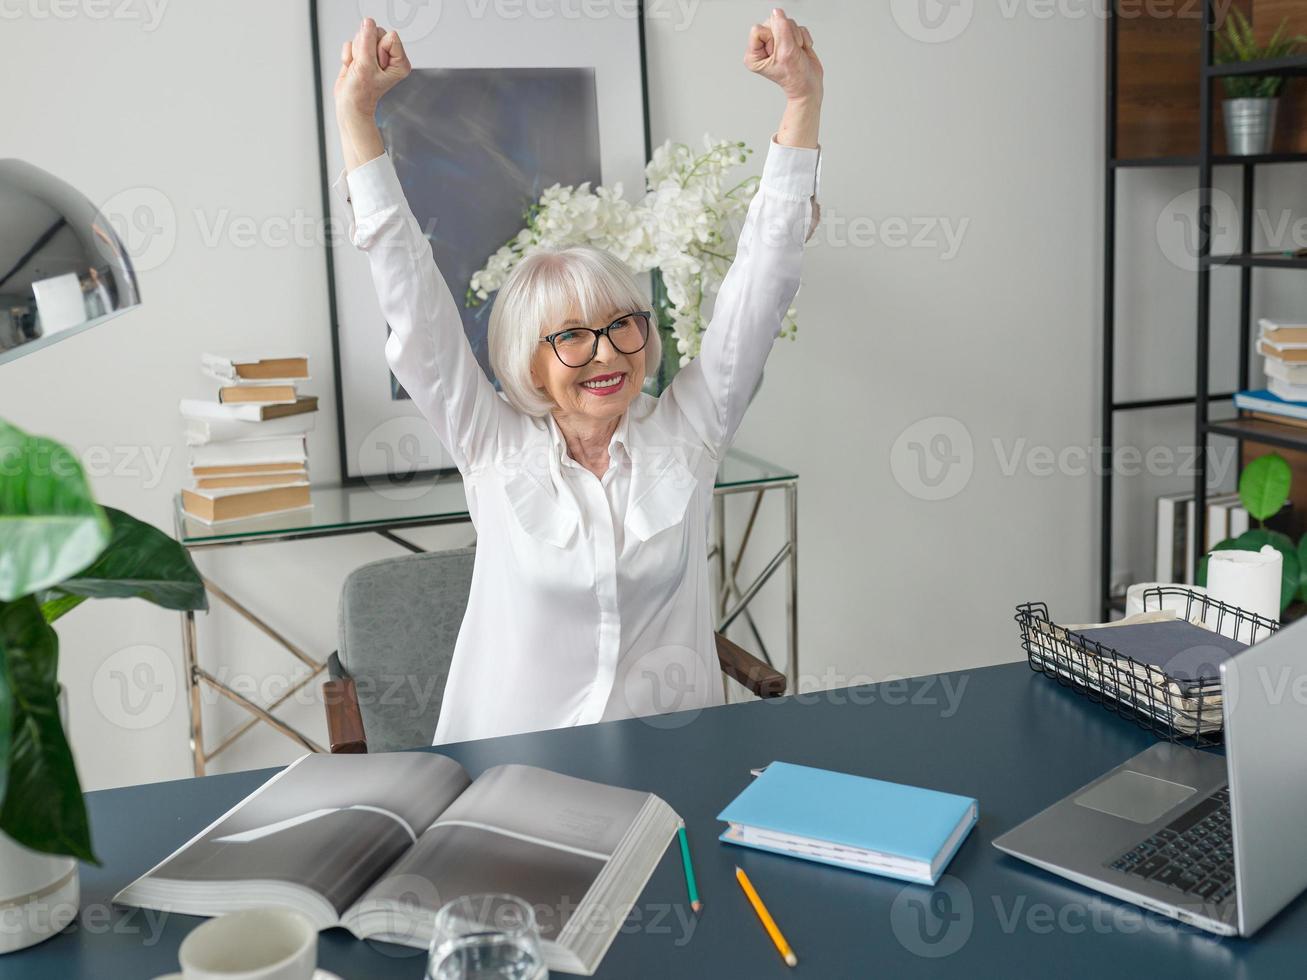 Mujer de cabello gris hermosa senior en blusa blanca feliz en la oficina. trabajo, personas mayores, problemas, éxito, encontrar una solución, concepto de experiencia foto